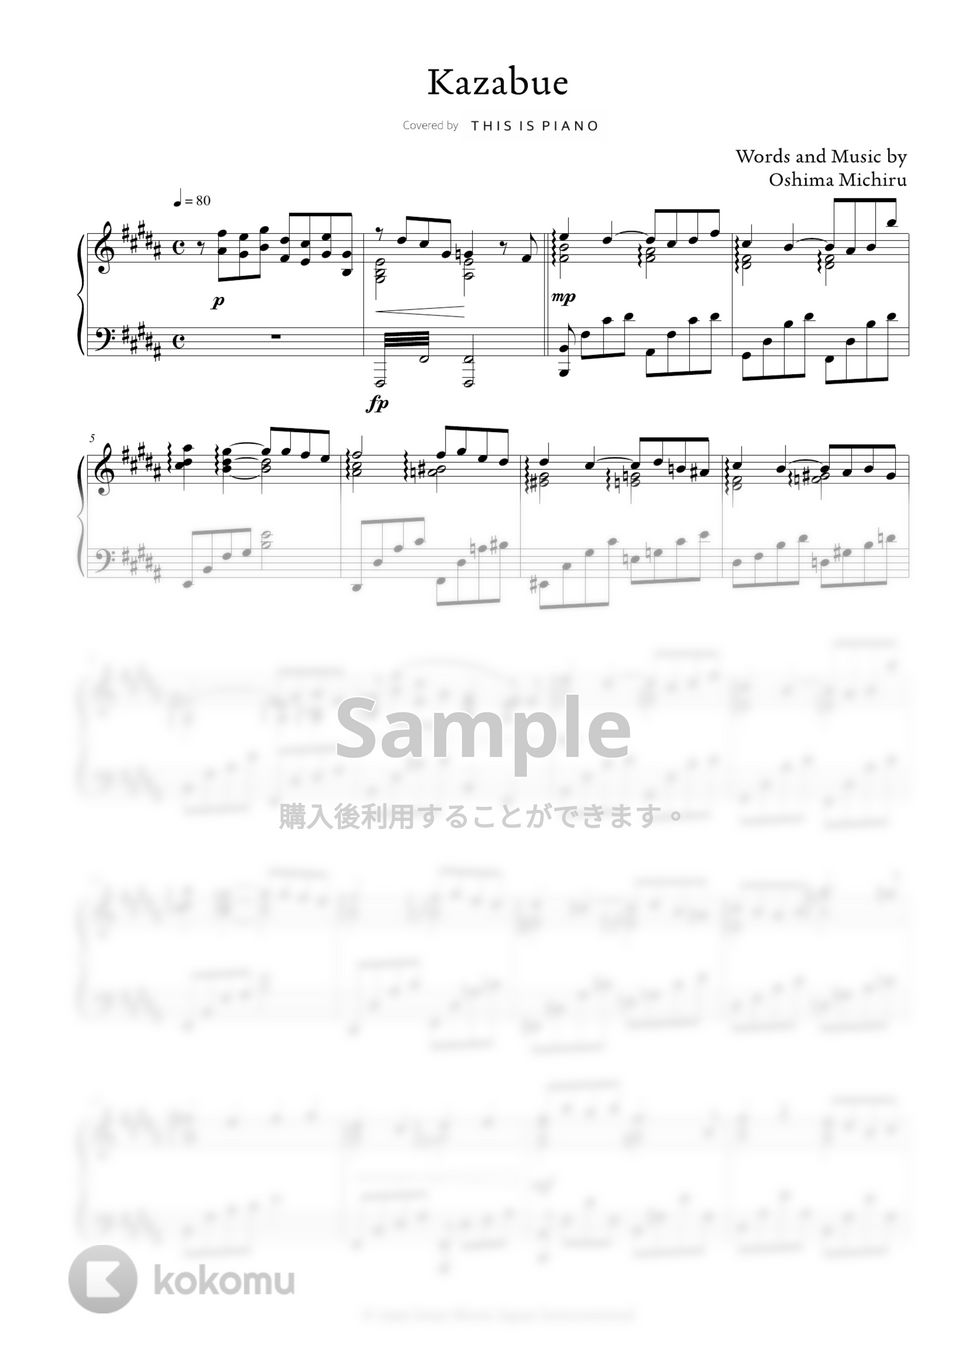 大島 ミチル - Kazabue by THIS IS PIANO